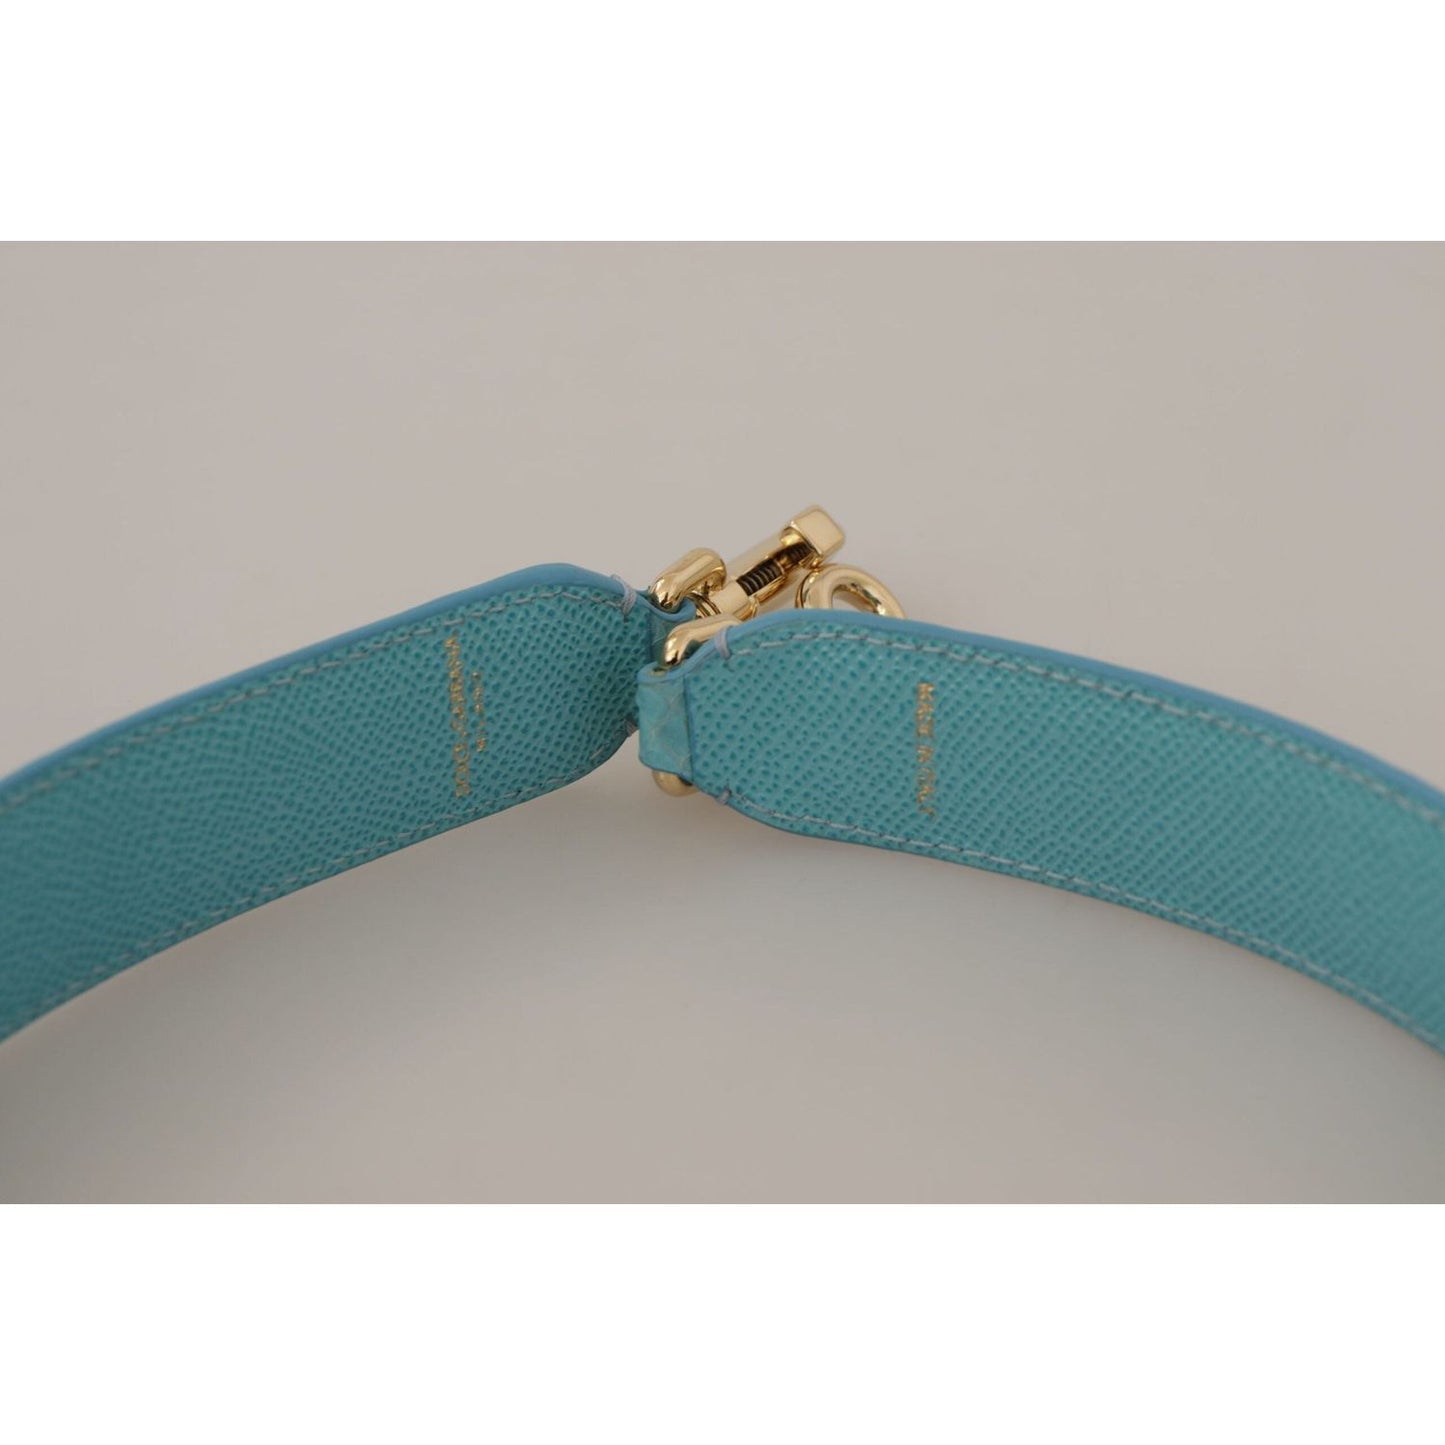 Dolce & Gabbana Elegant Blue Leather Bag Strap with Gold Accents blue-crystals-leather-bag-shoulder-strap